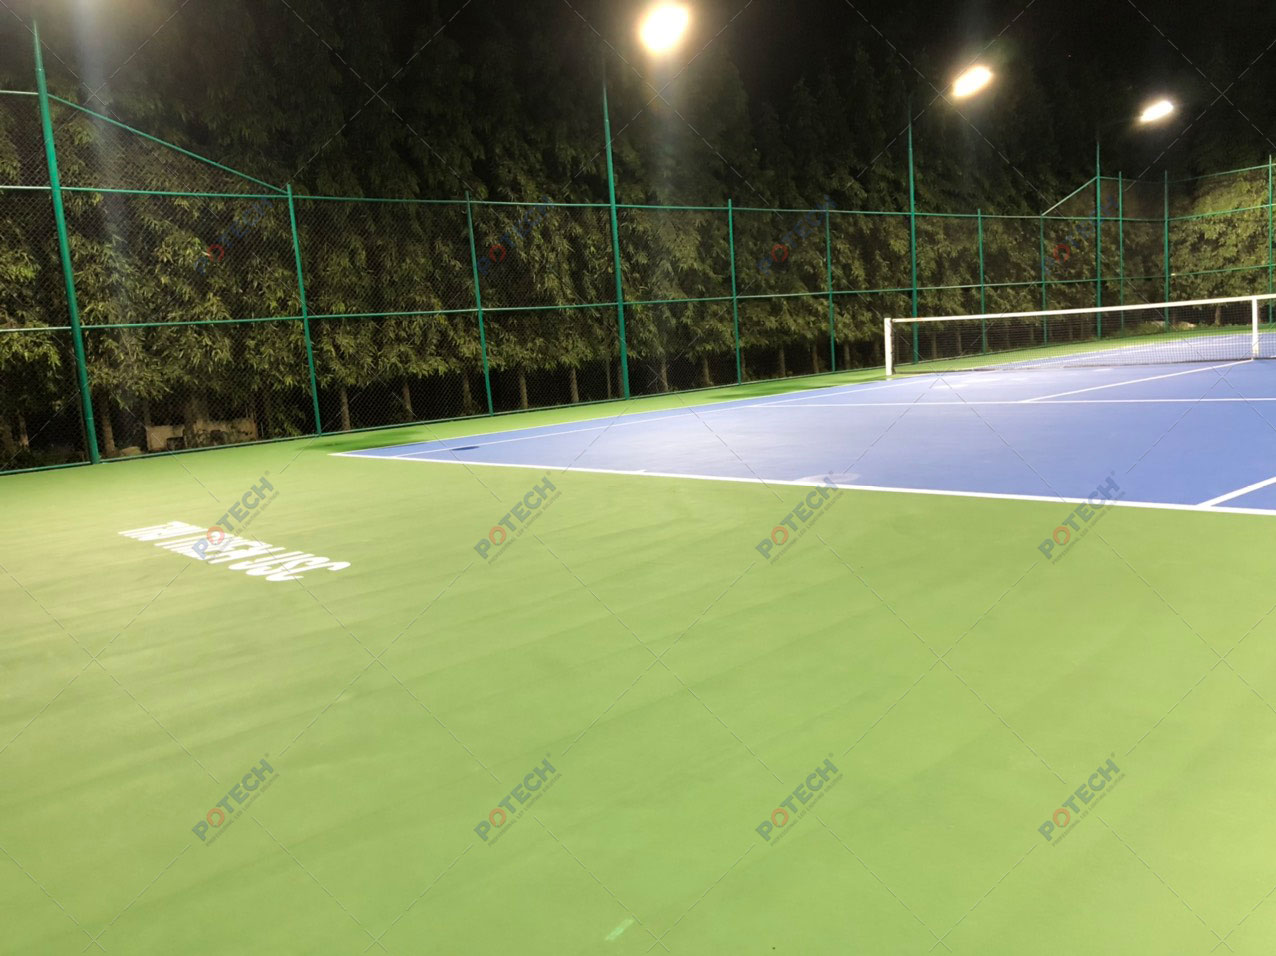 Đèn LED sân tennis thủ thiêm usc